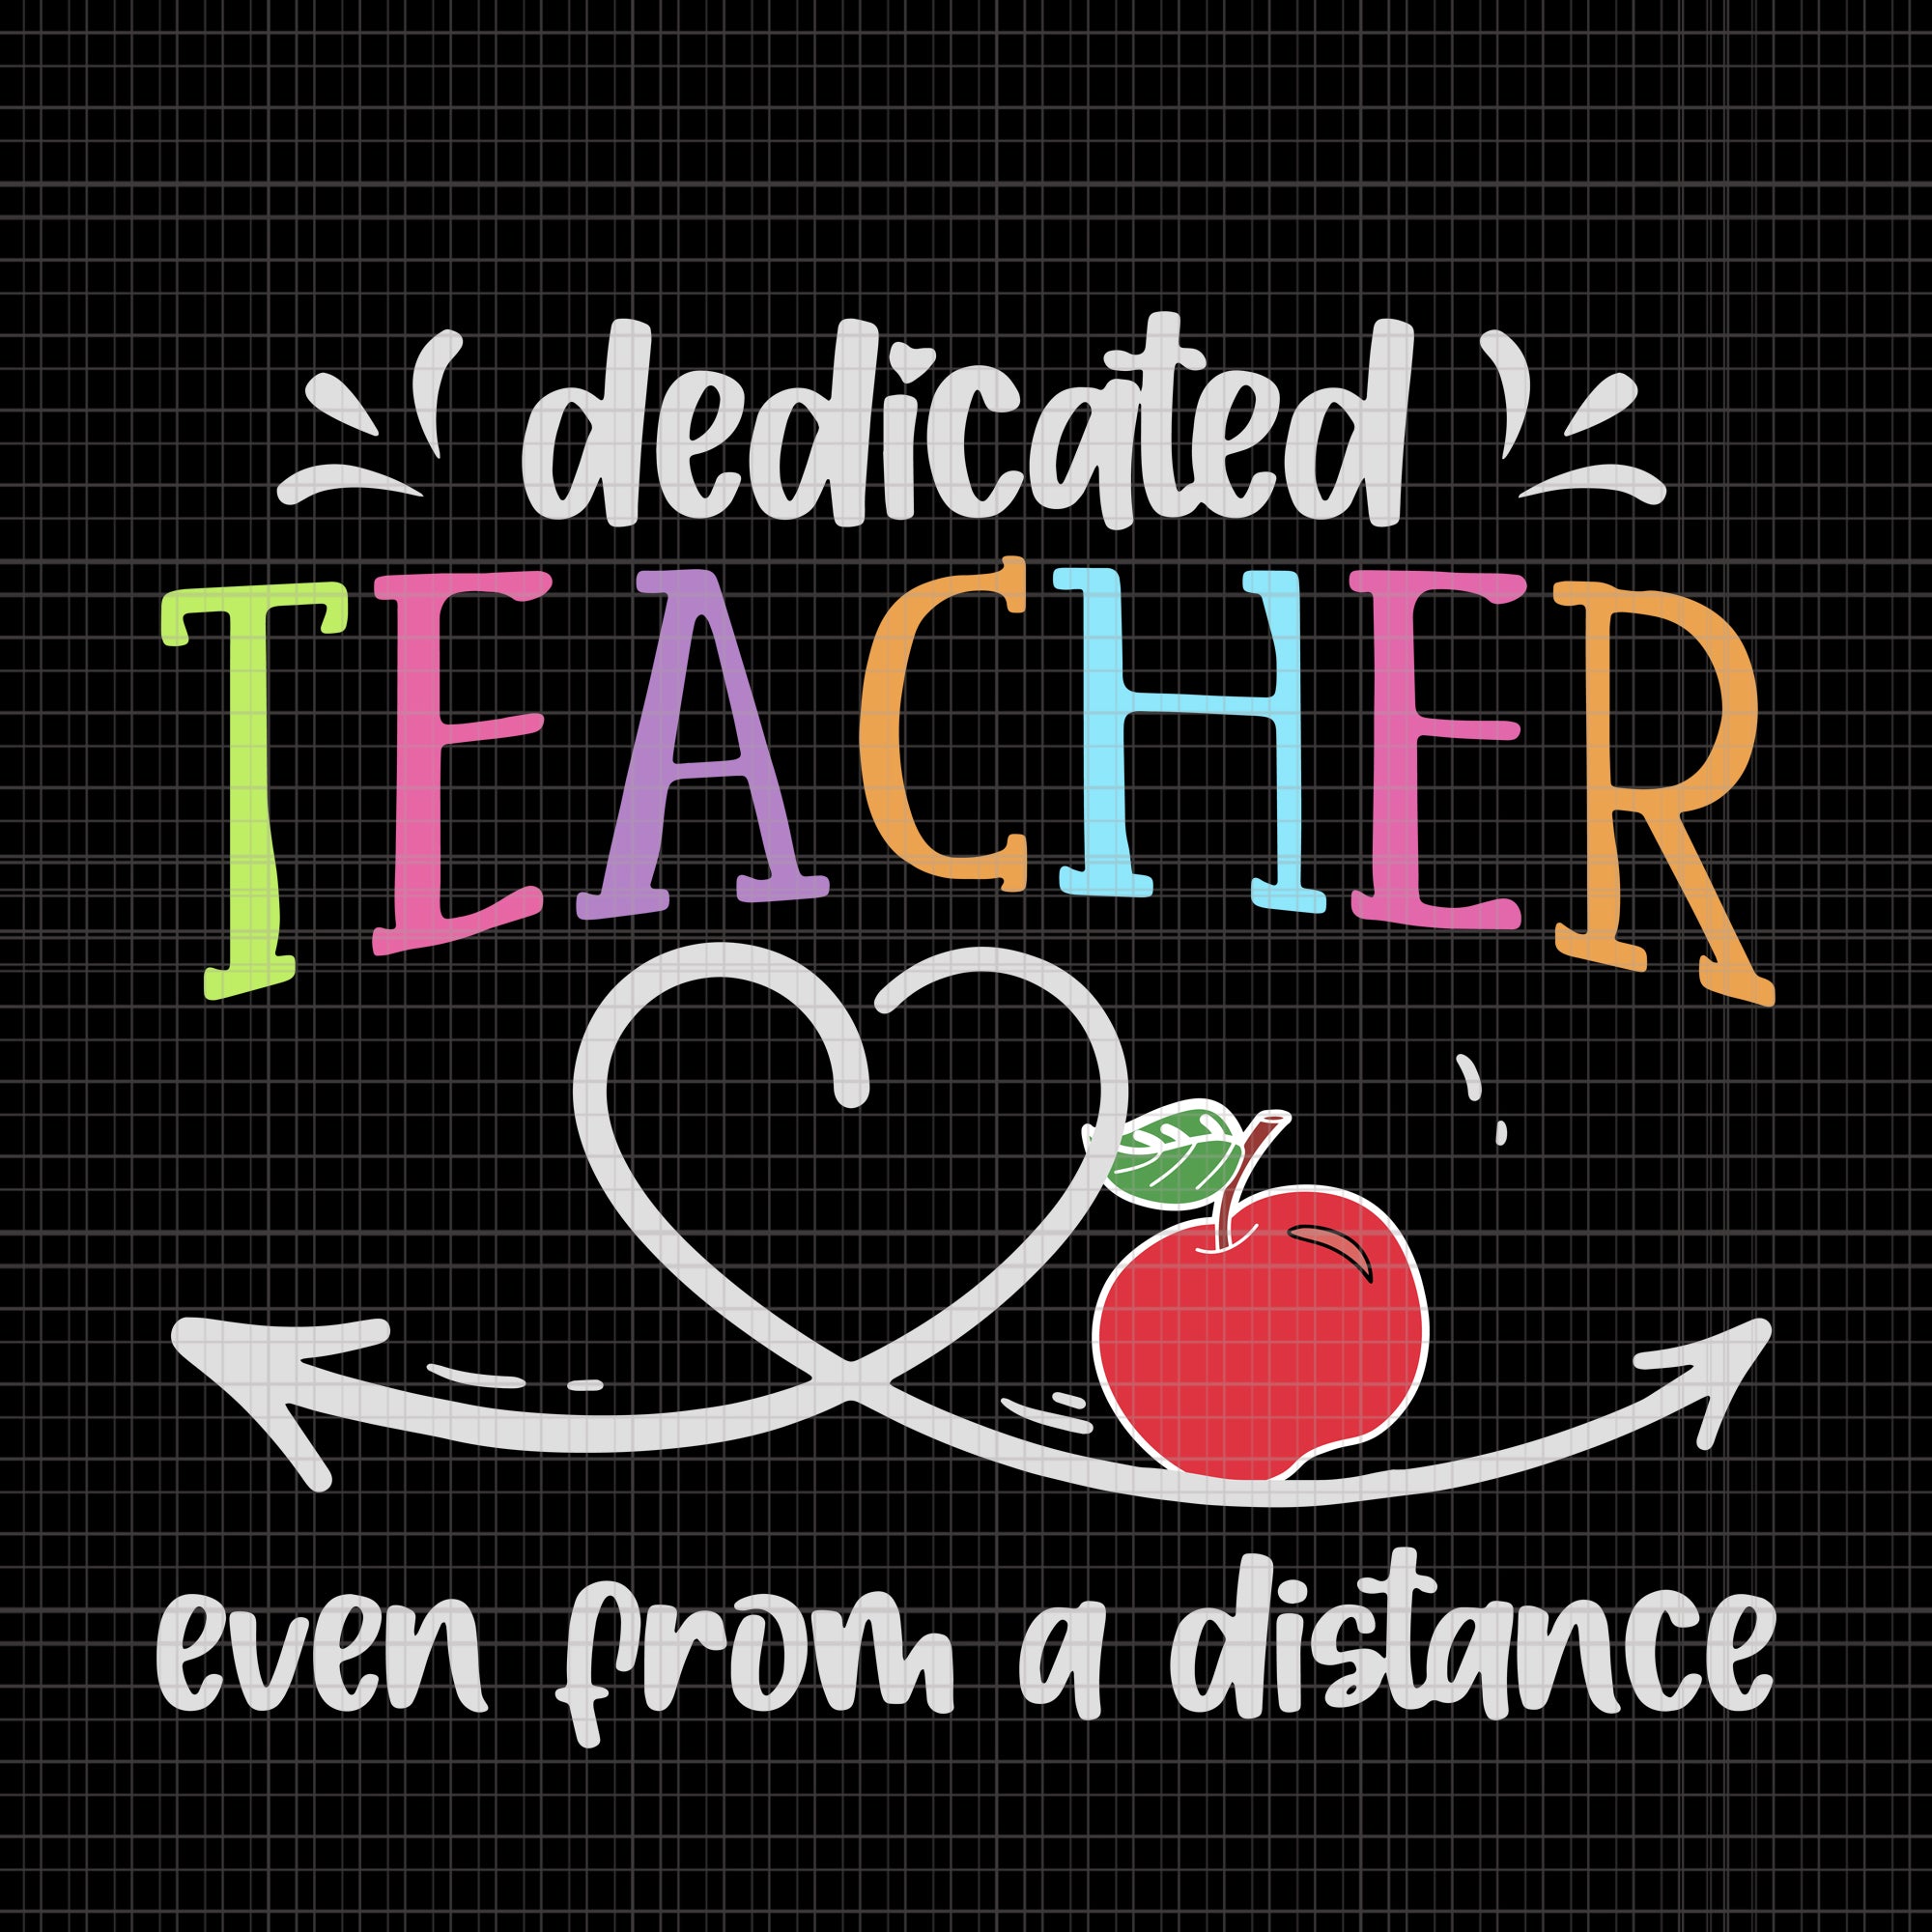 Dedicated Teacher Even From A Distance, Dedicated Teacher Even From A Distance svg, Dedicated Teacher Even From A Distance png, teacher svg, teacher vector, teacher design